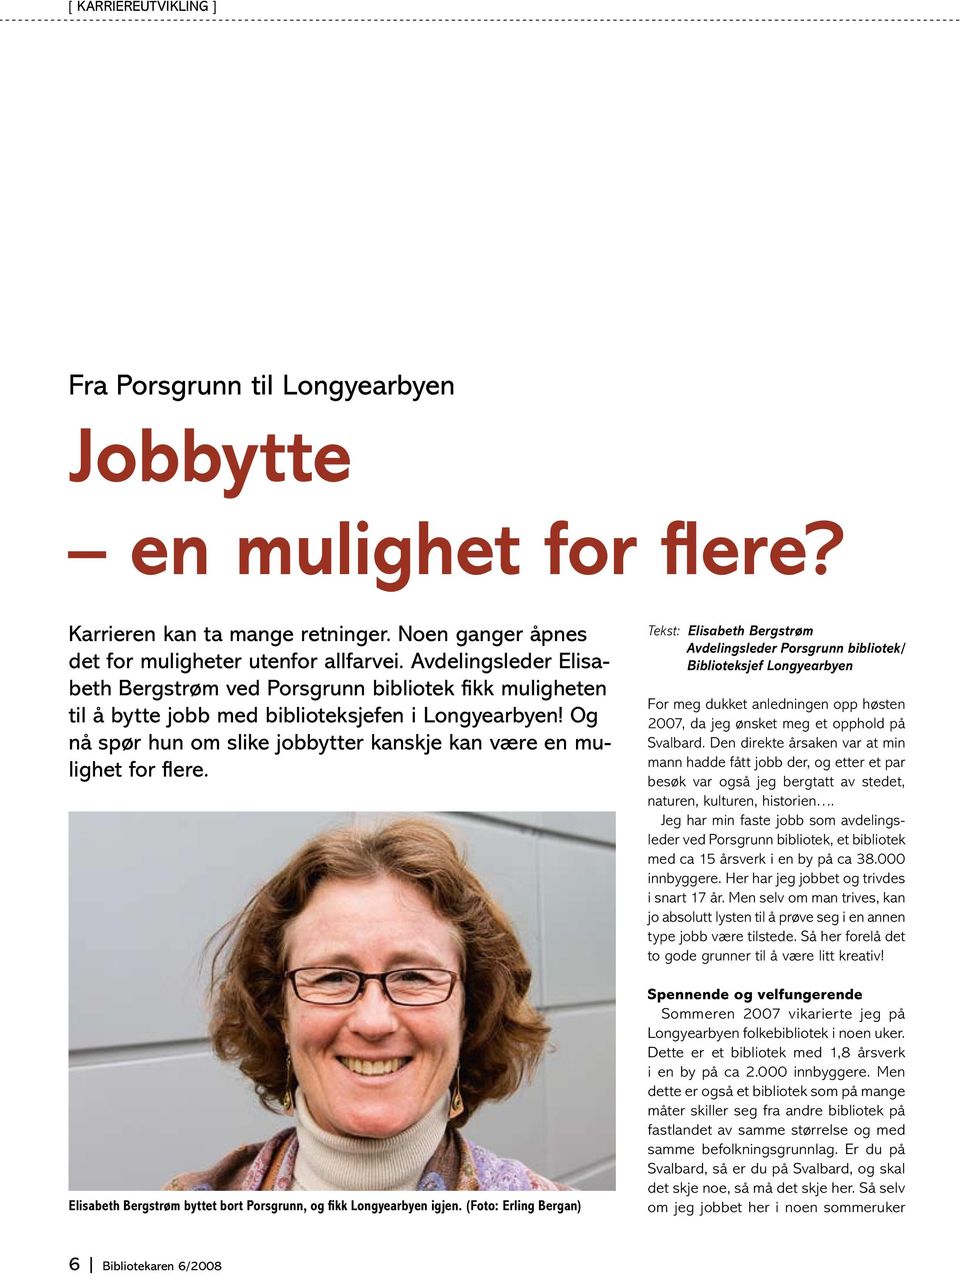 Og nå spør hun om slike jobbytter kanskje kan være en mulighet for flere. Elisabeth Bergstrøm byttet bort Porsgrunn, og fikk Longyearbyen igjen.